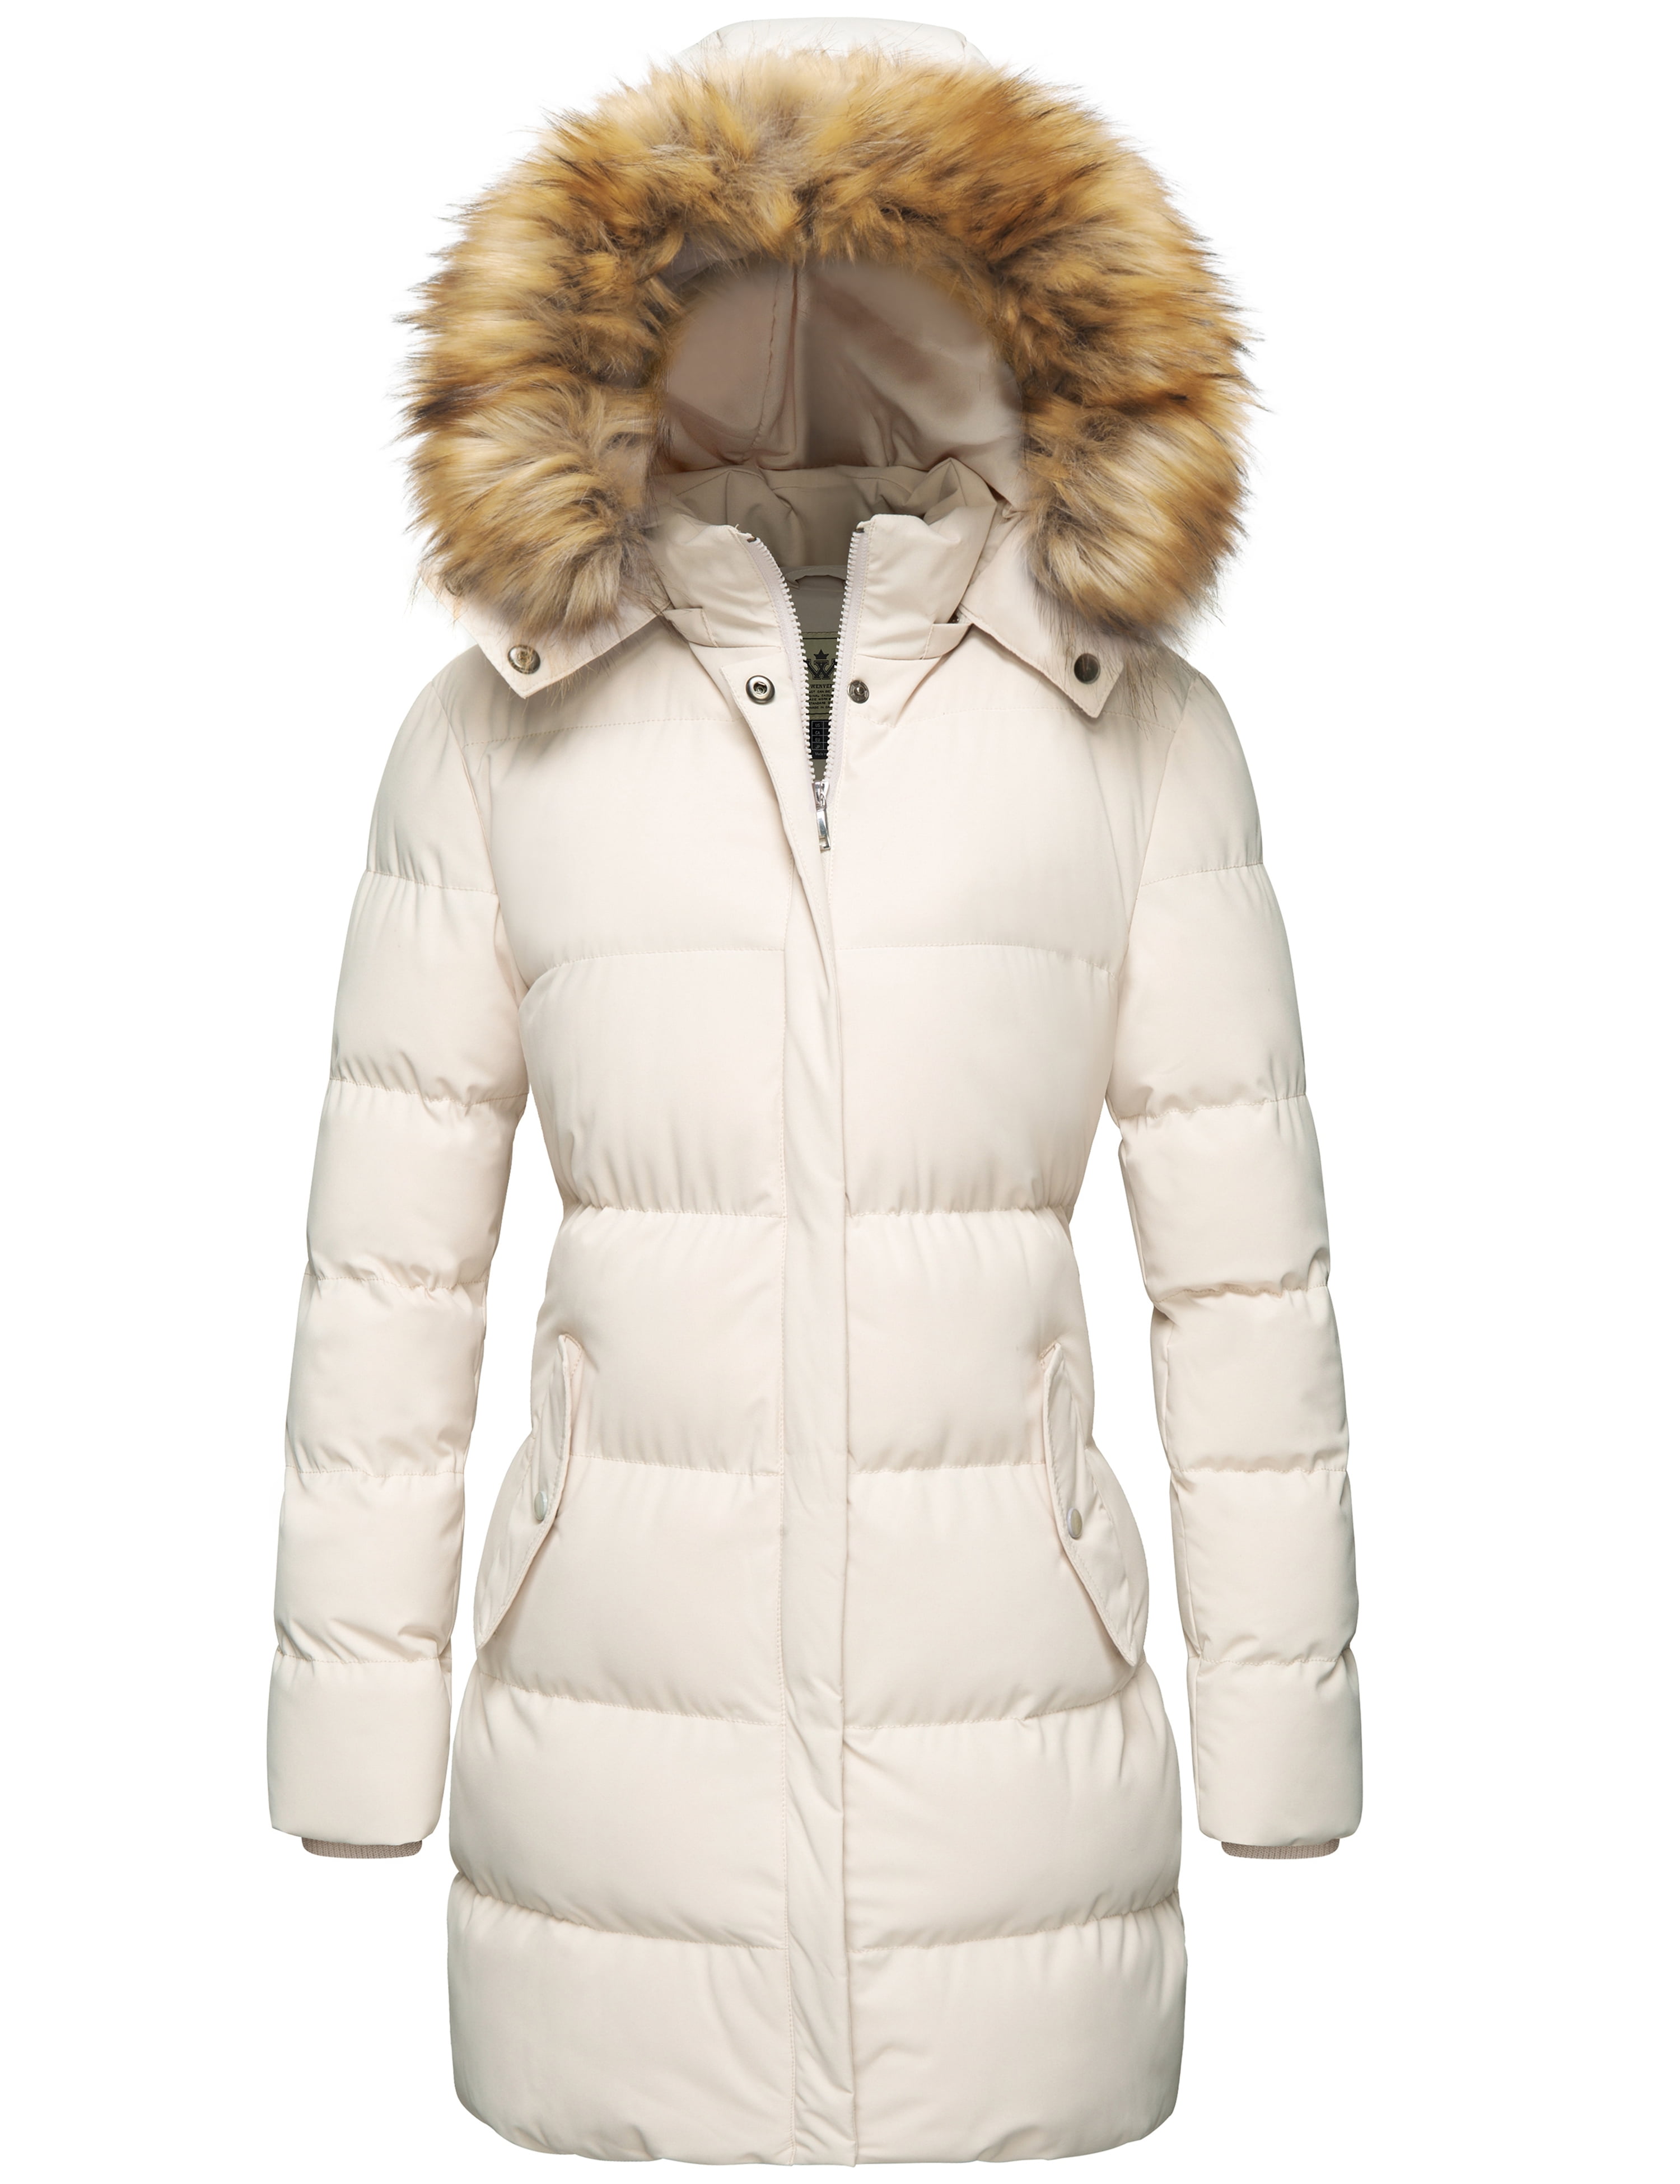 WenVen Women's Winter Cotton Puffer Coat Warm Waterproof Hooded Long ...